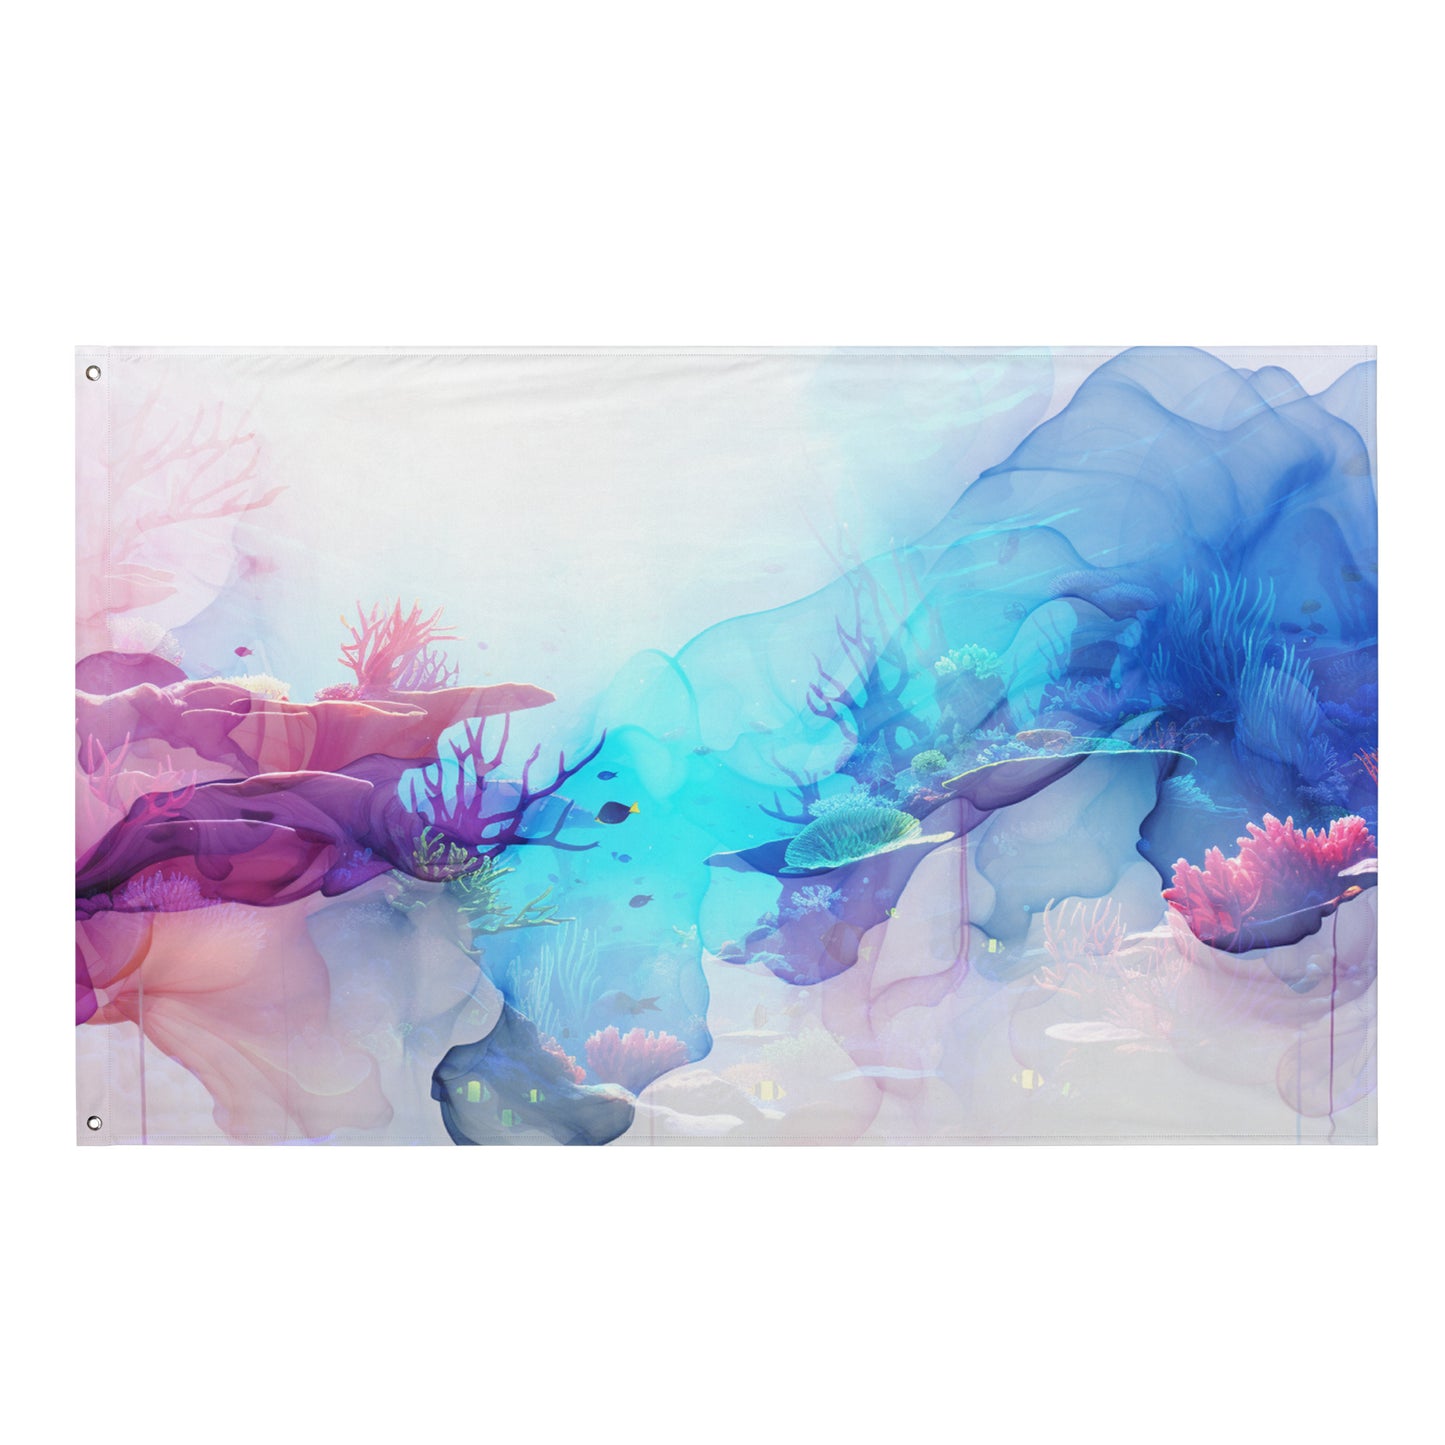 Vivid Dreams Coral Reef Wall Flag - Dreamscape Collection by Neduz Designs